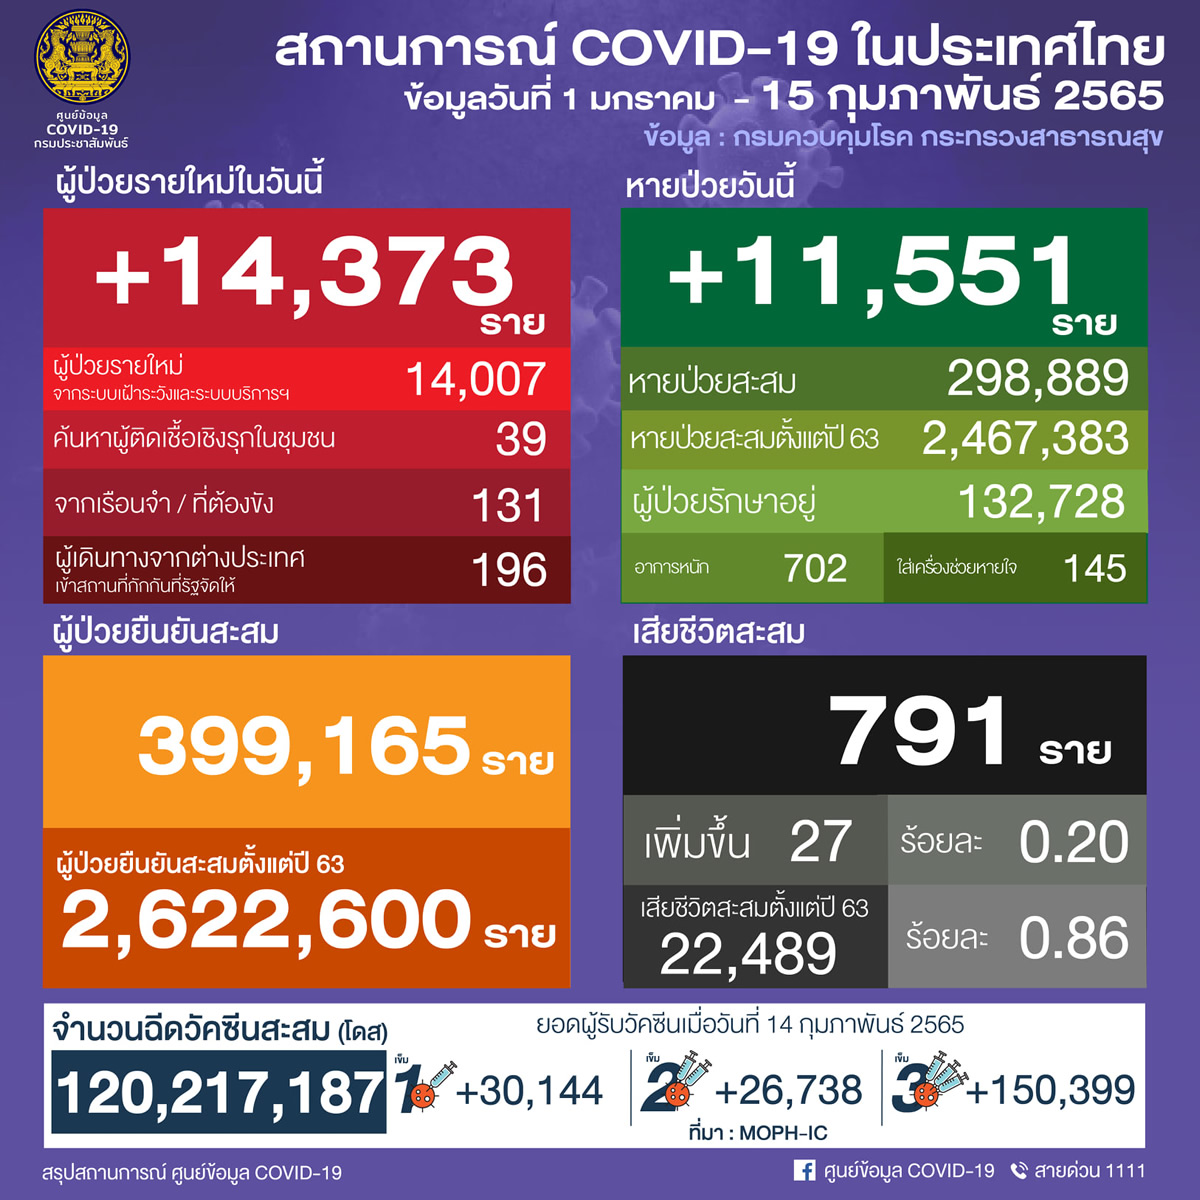 タイ 14,373人陽性 27人死亡／バンコク 3,180人陽性／サムットプラカン 887人陽性／チョンブリ 548人陽性［2022年2月15日発表］